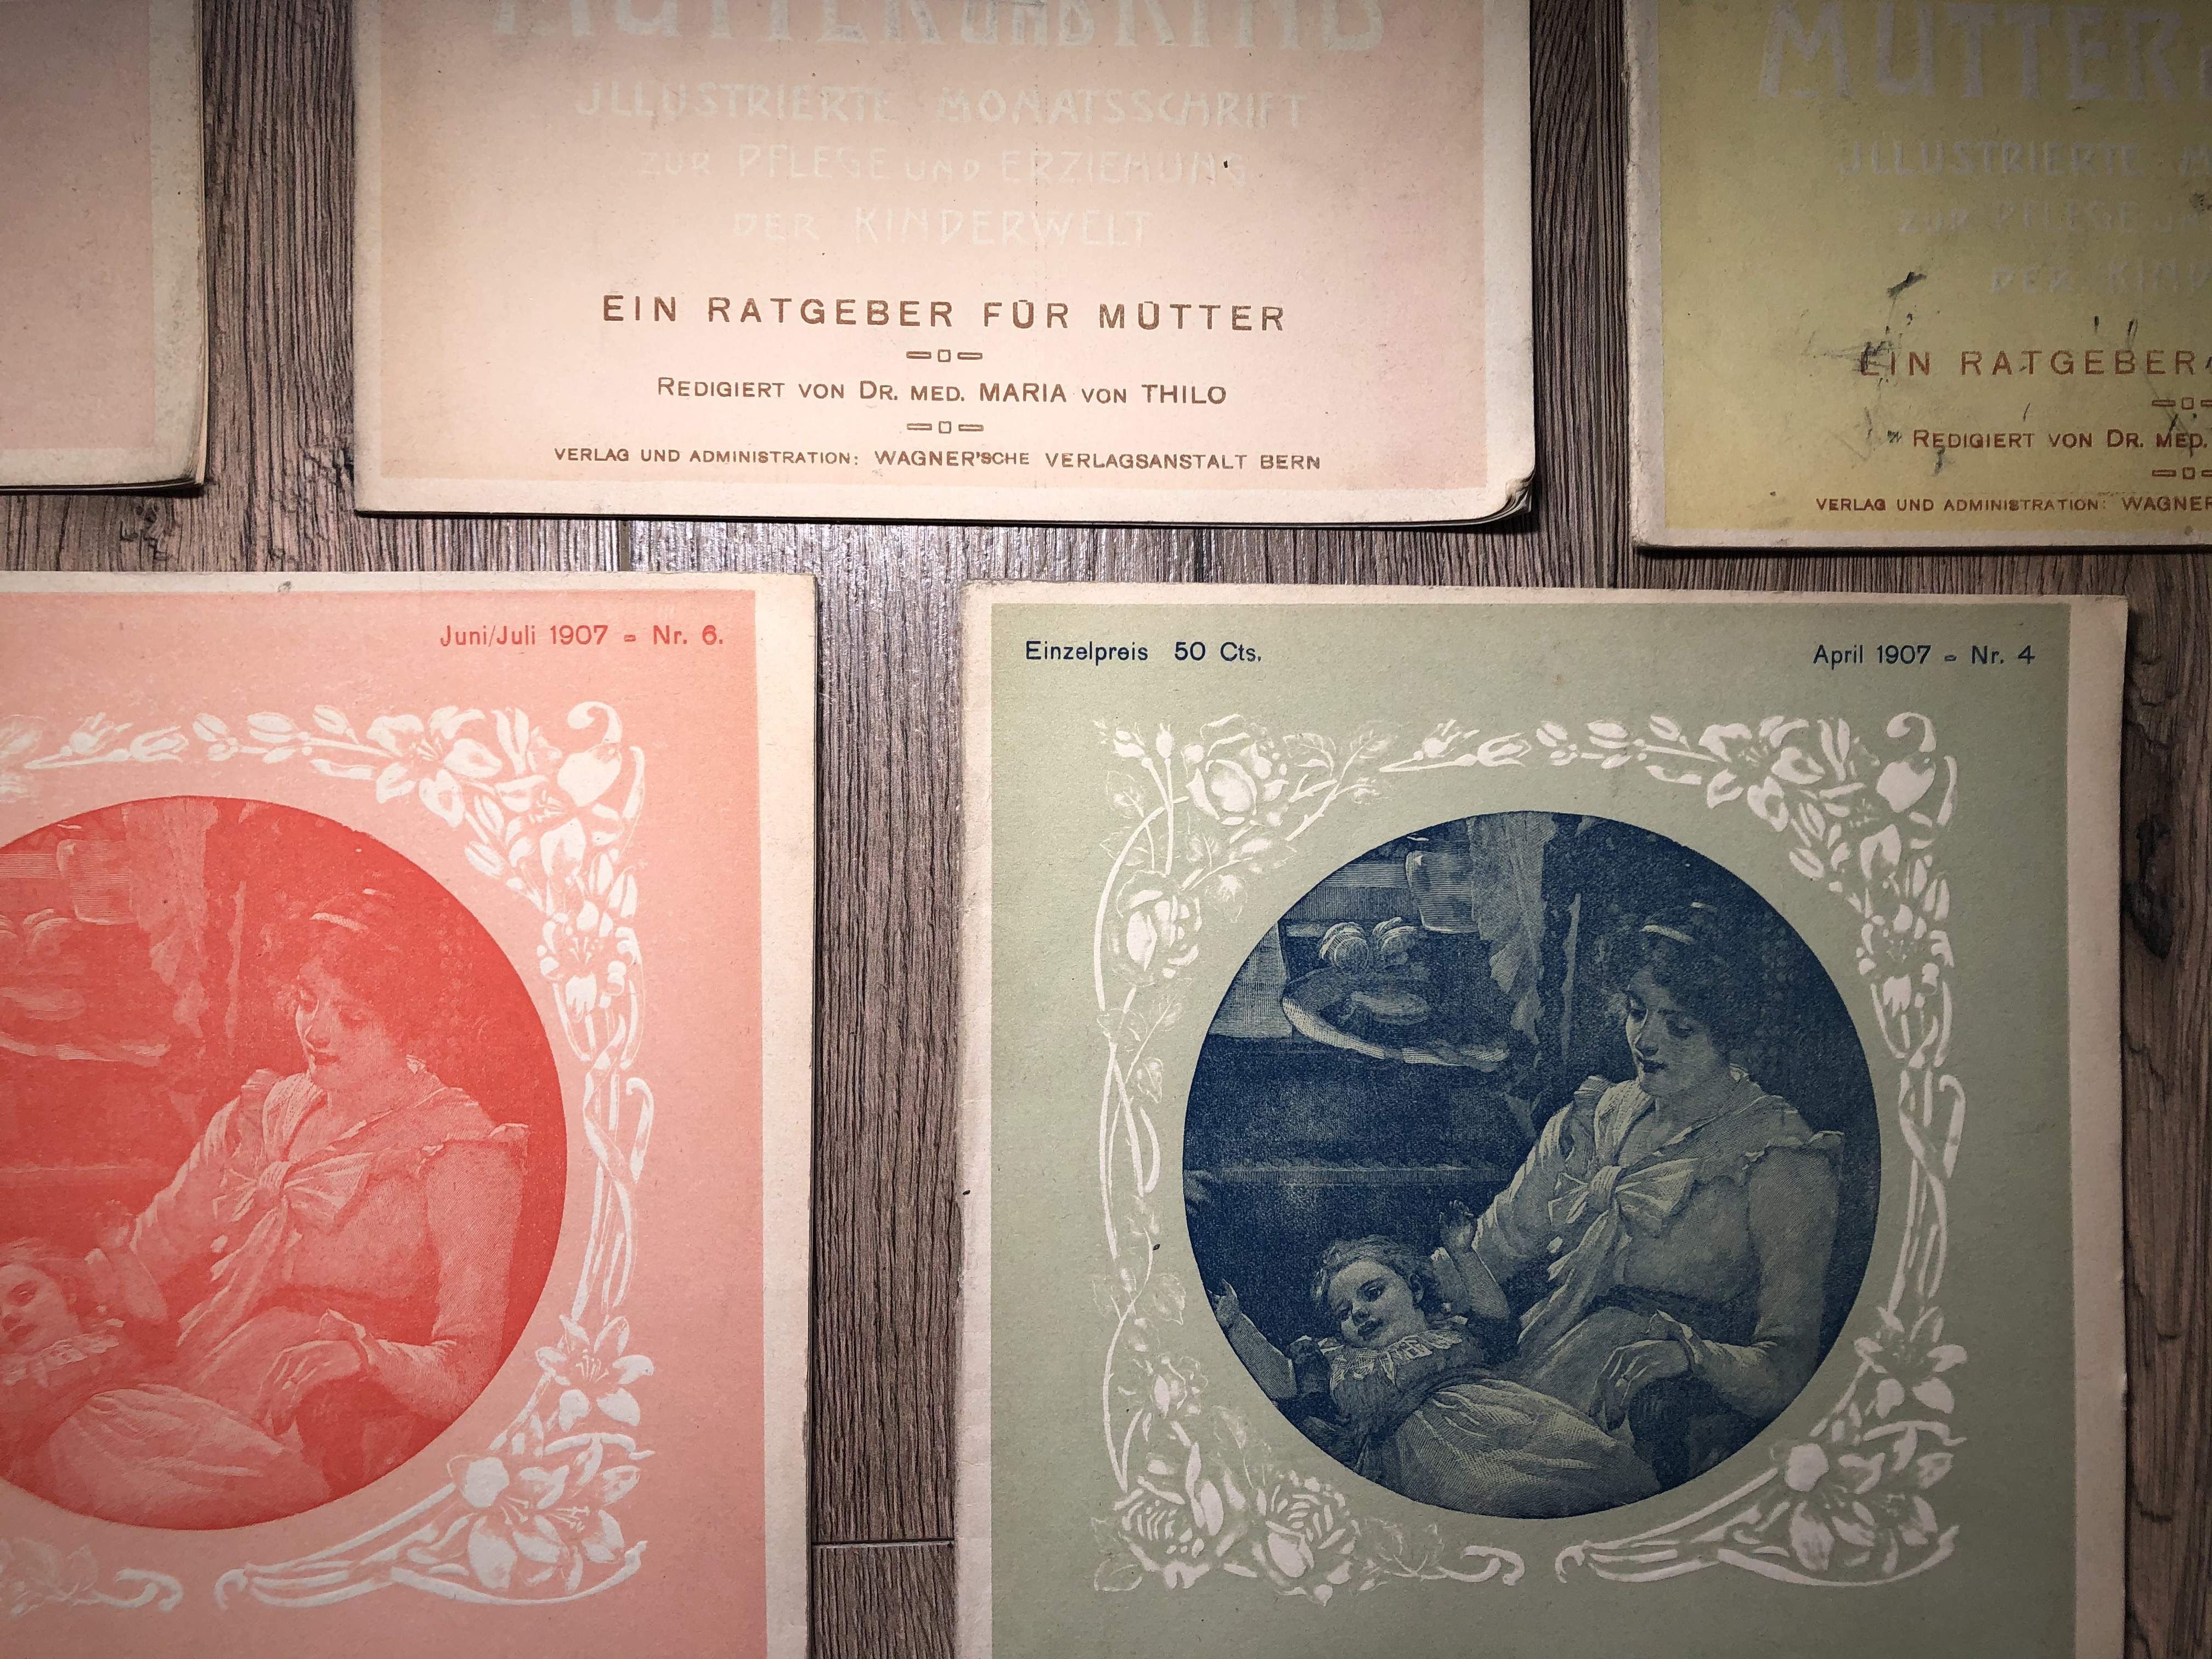 5 alte Hefte "Mutter und Kind" von 1905-07